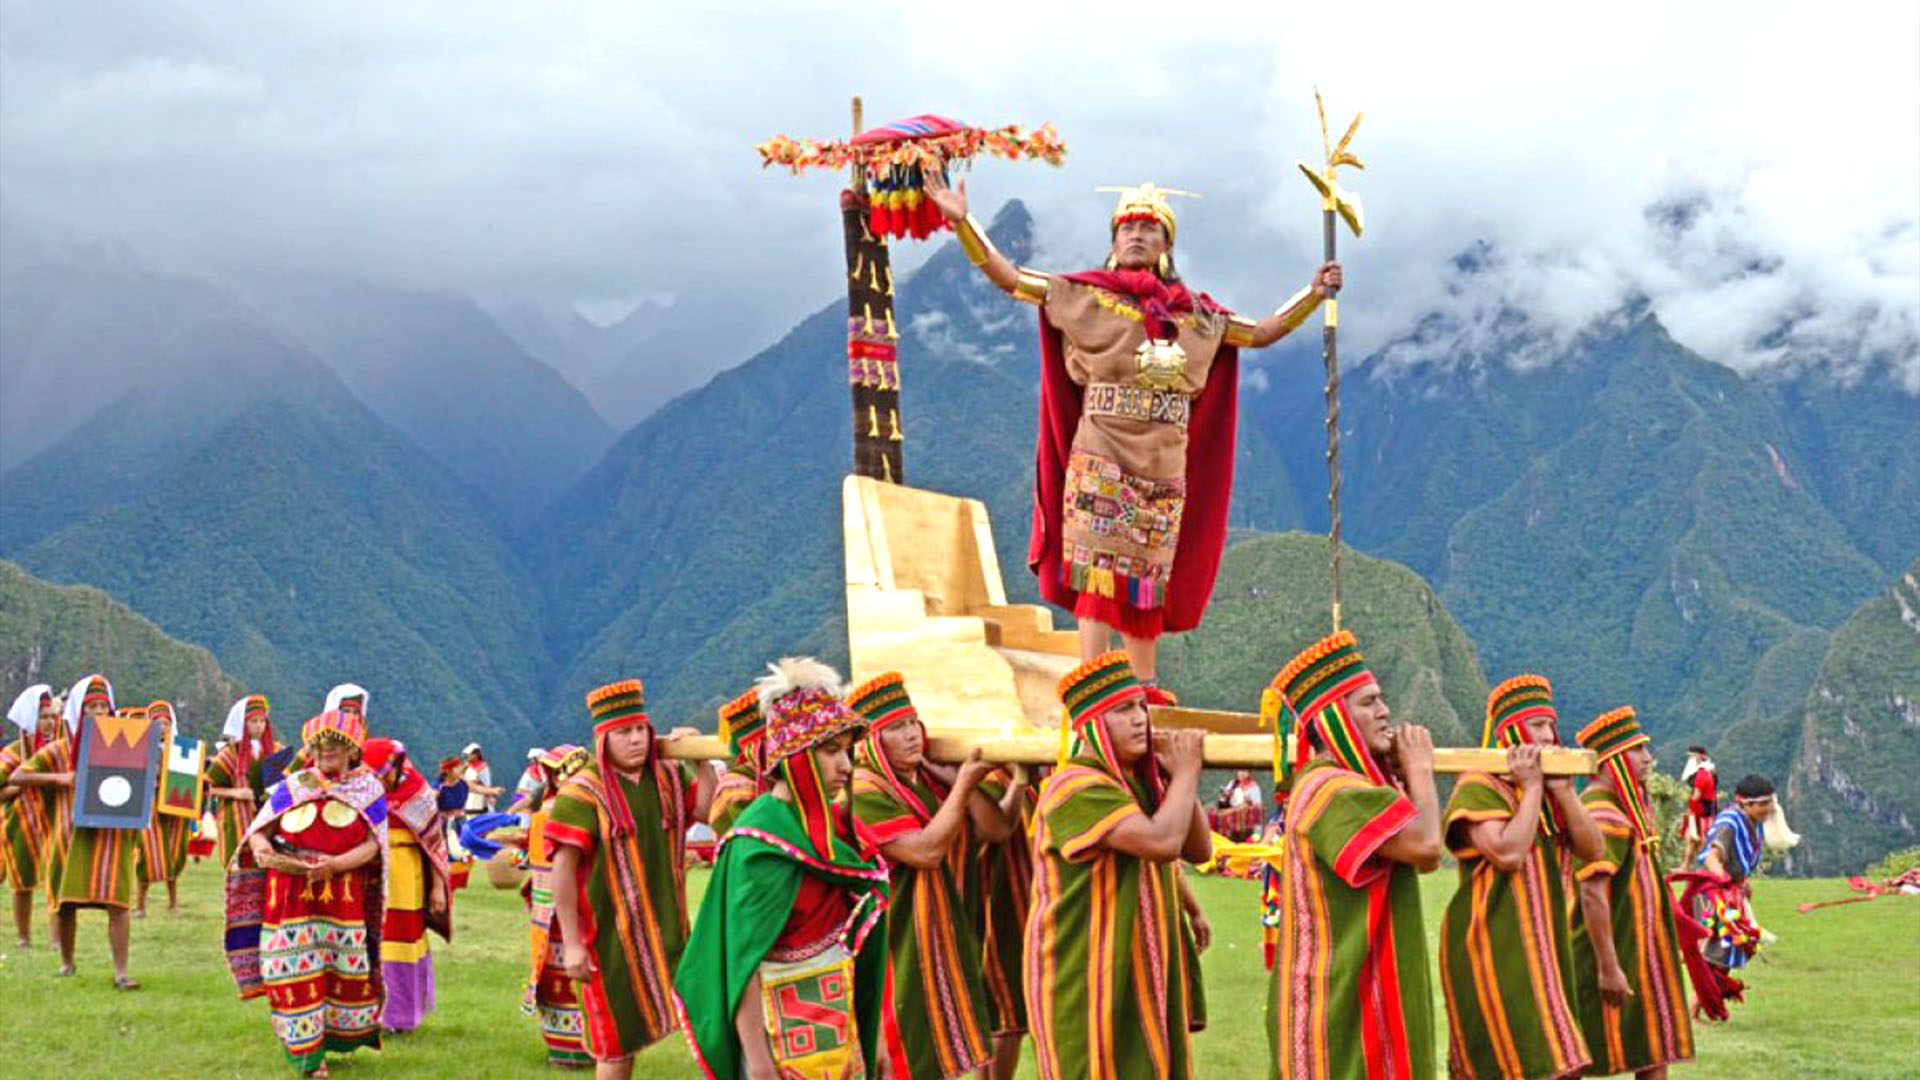 ceremonia de Inti Raymi en cusco perú